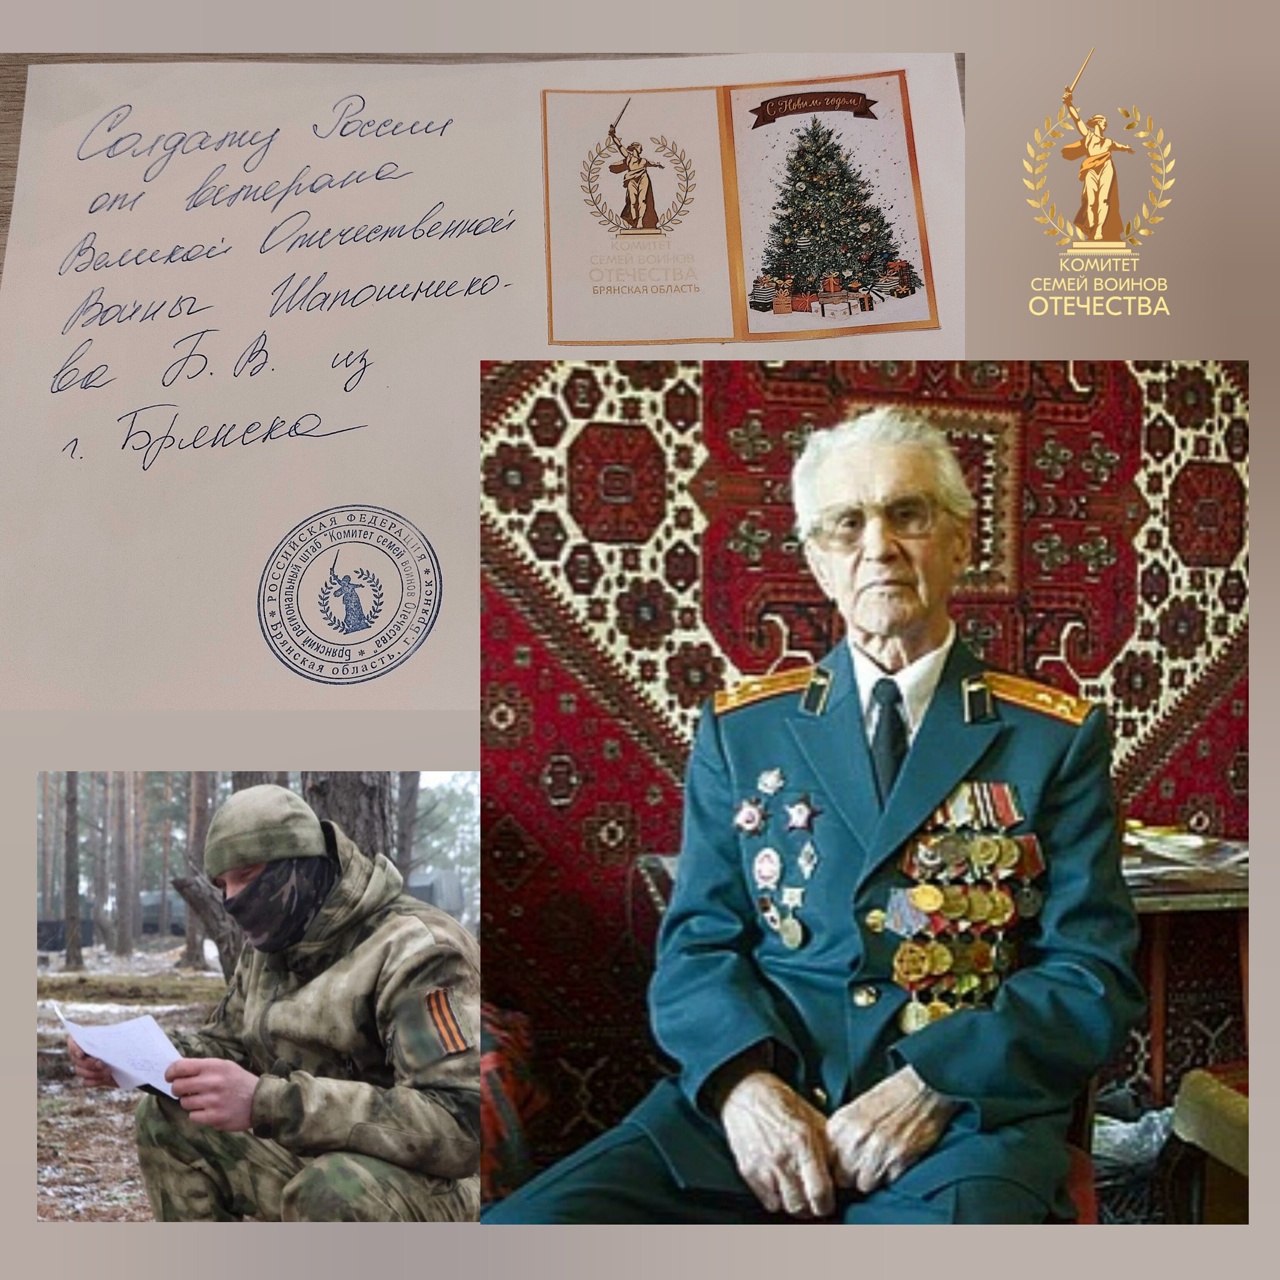 Брянский ветеран войны Борис Шапошников написал письмо бойцам СВО